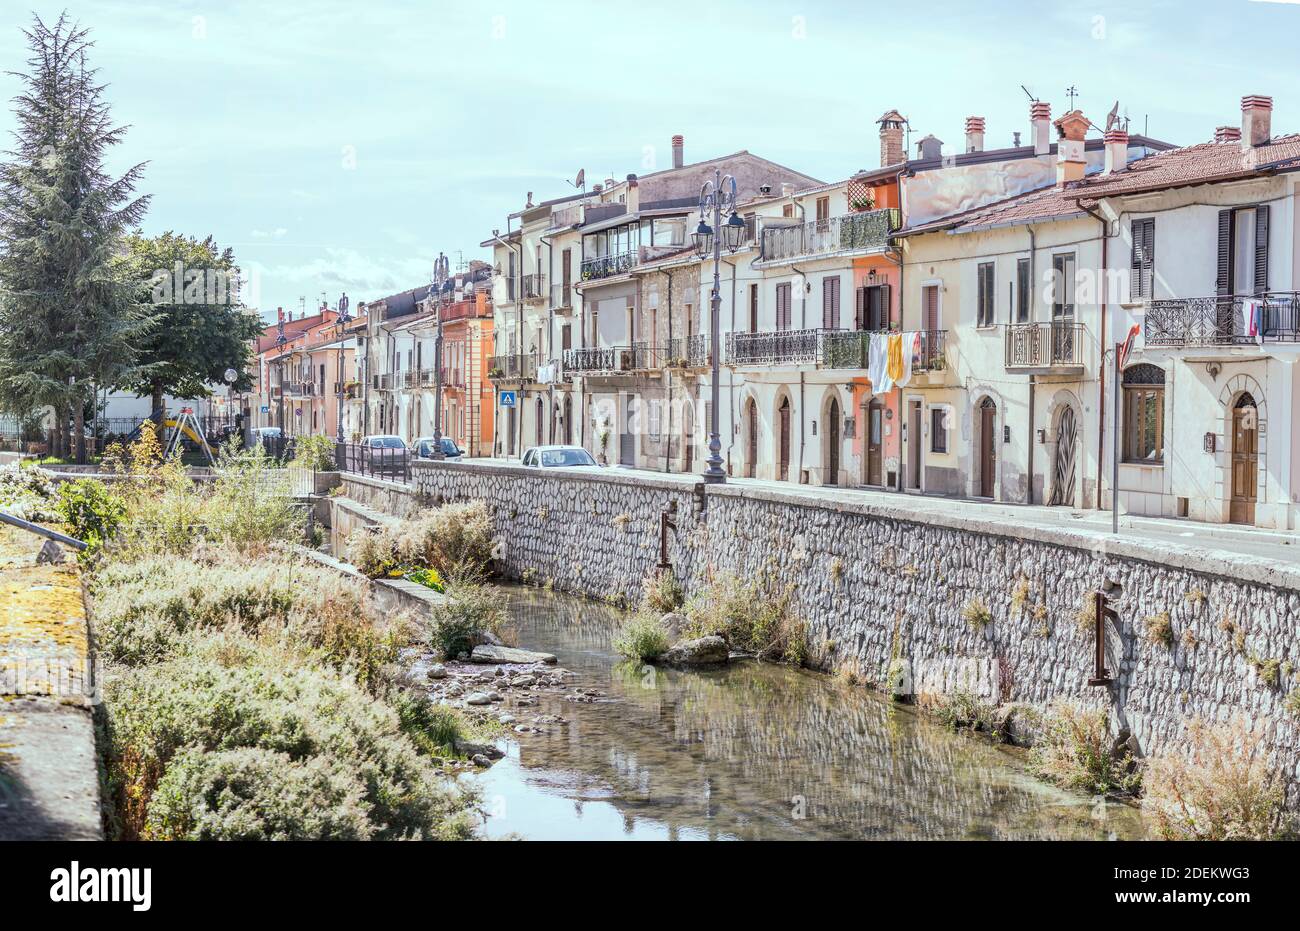 Paesaggio urbano con vecchie case sul lungofiume del fiume Givenco, girato in luce brillante a Pescina, l'Aquila, Abruzzo, Italia Foto Stock